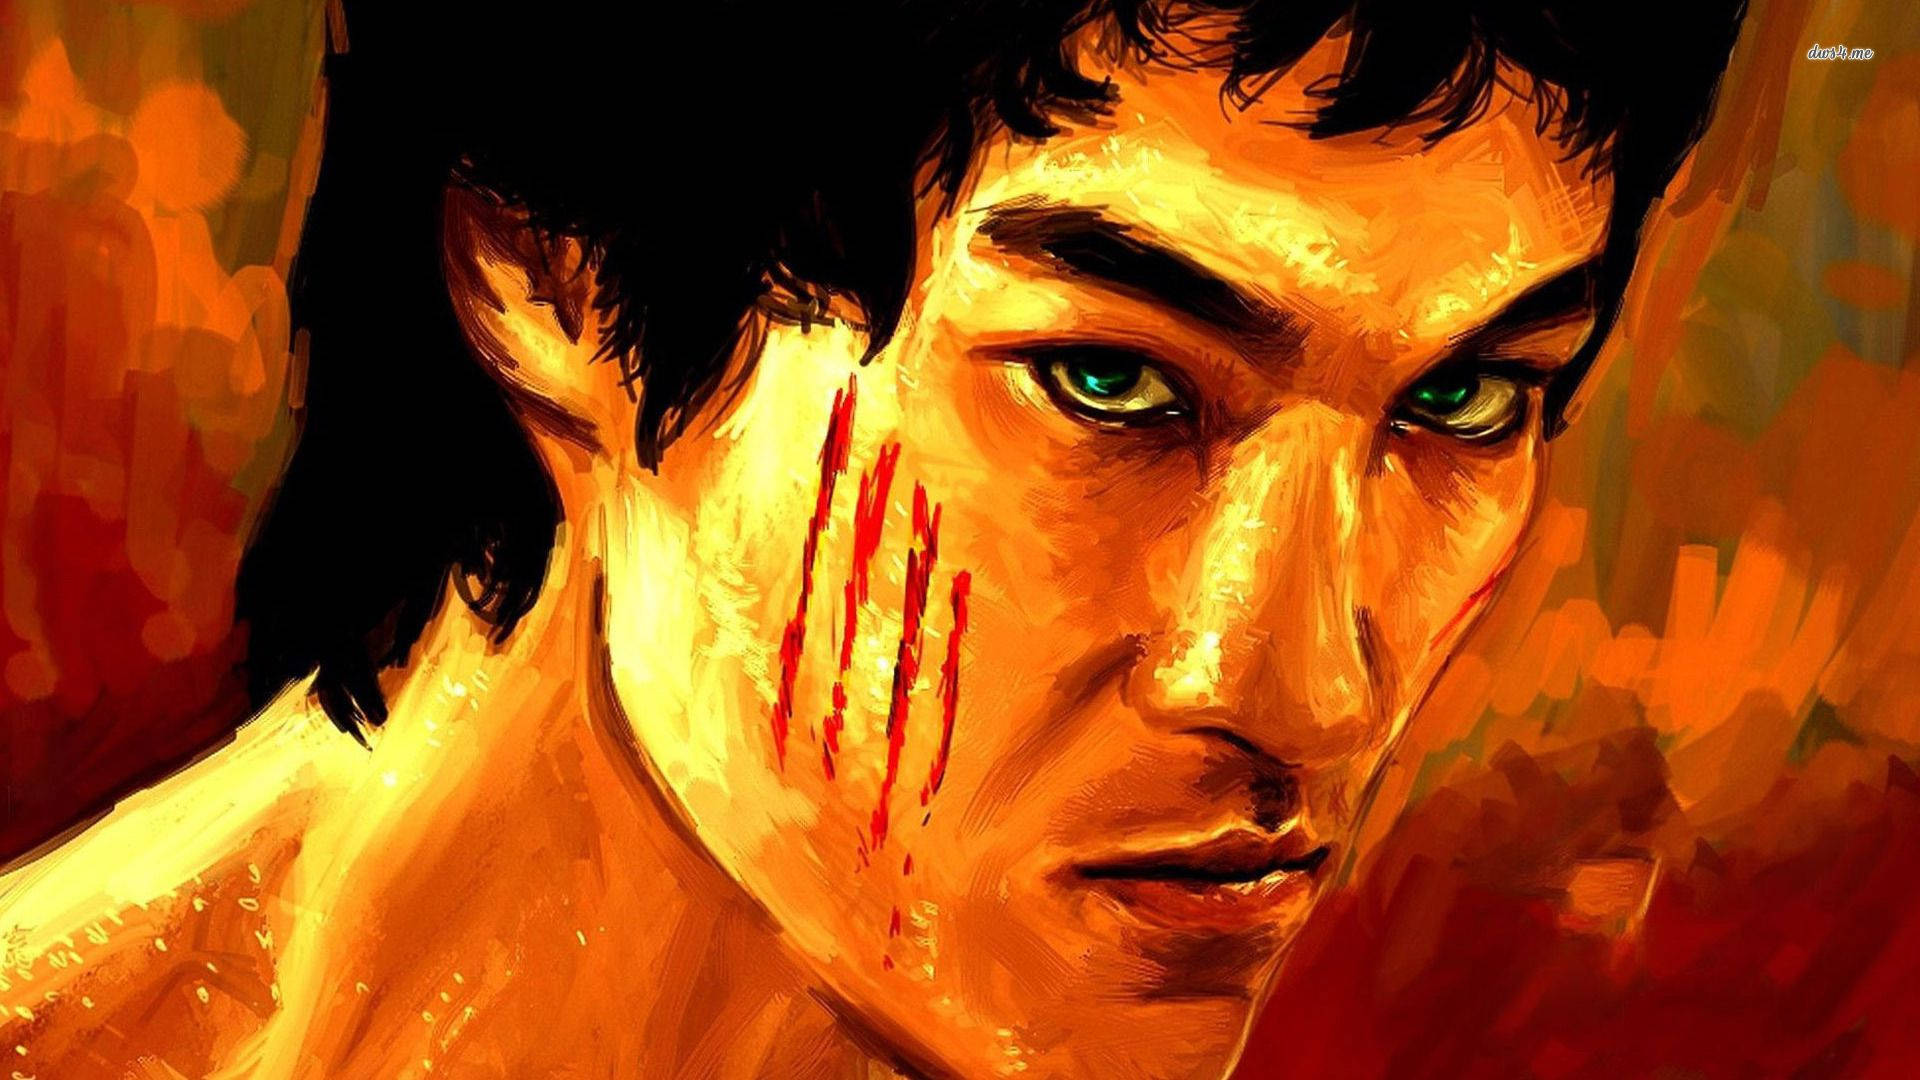 Fierce Looking Bruce Lee Painting Wallpaper